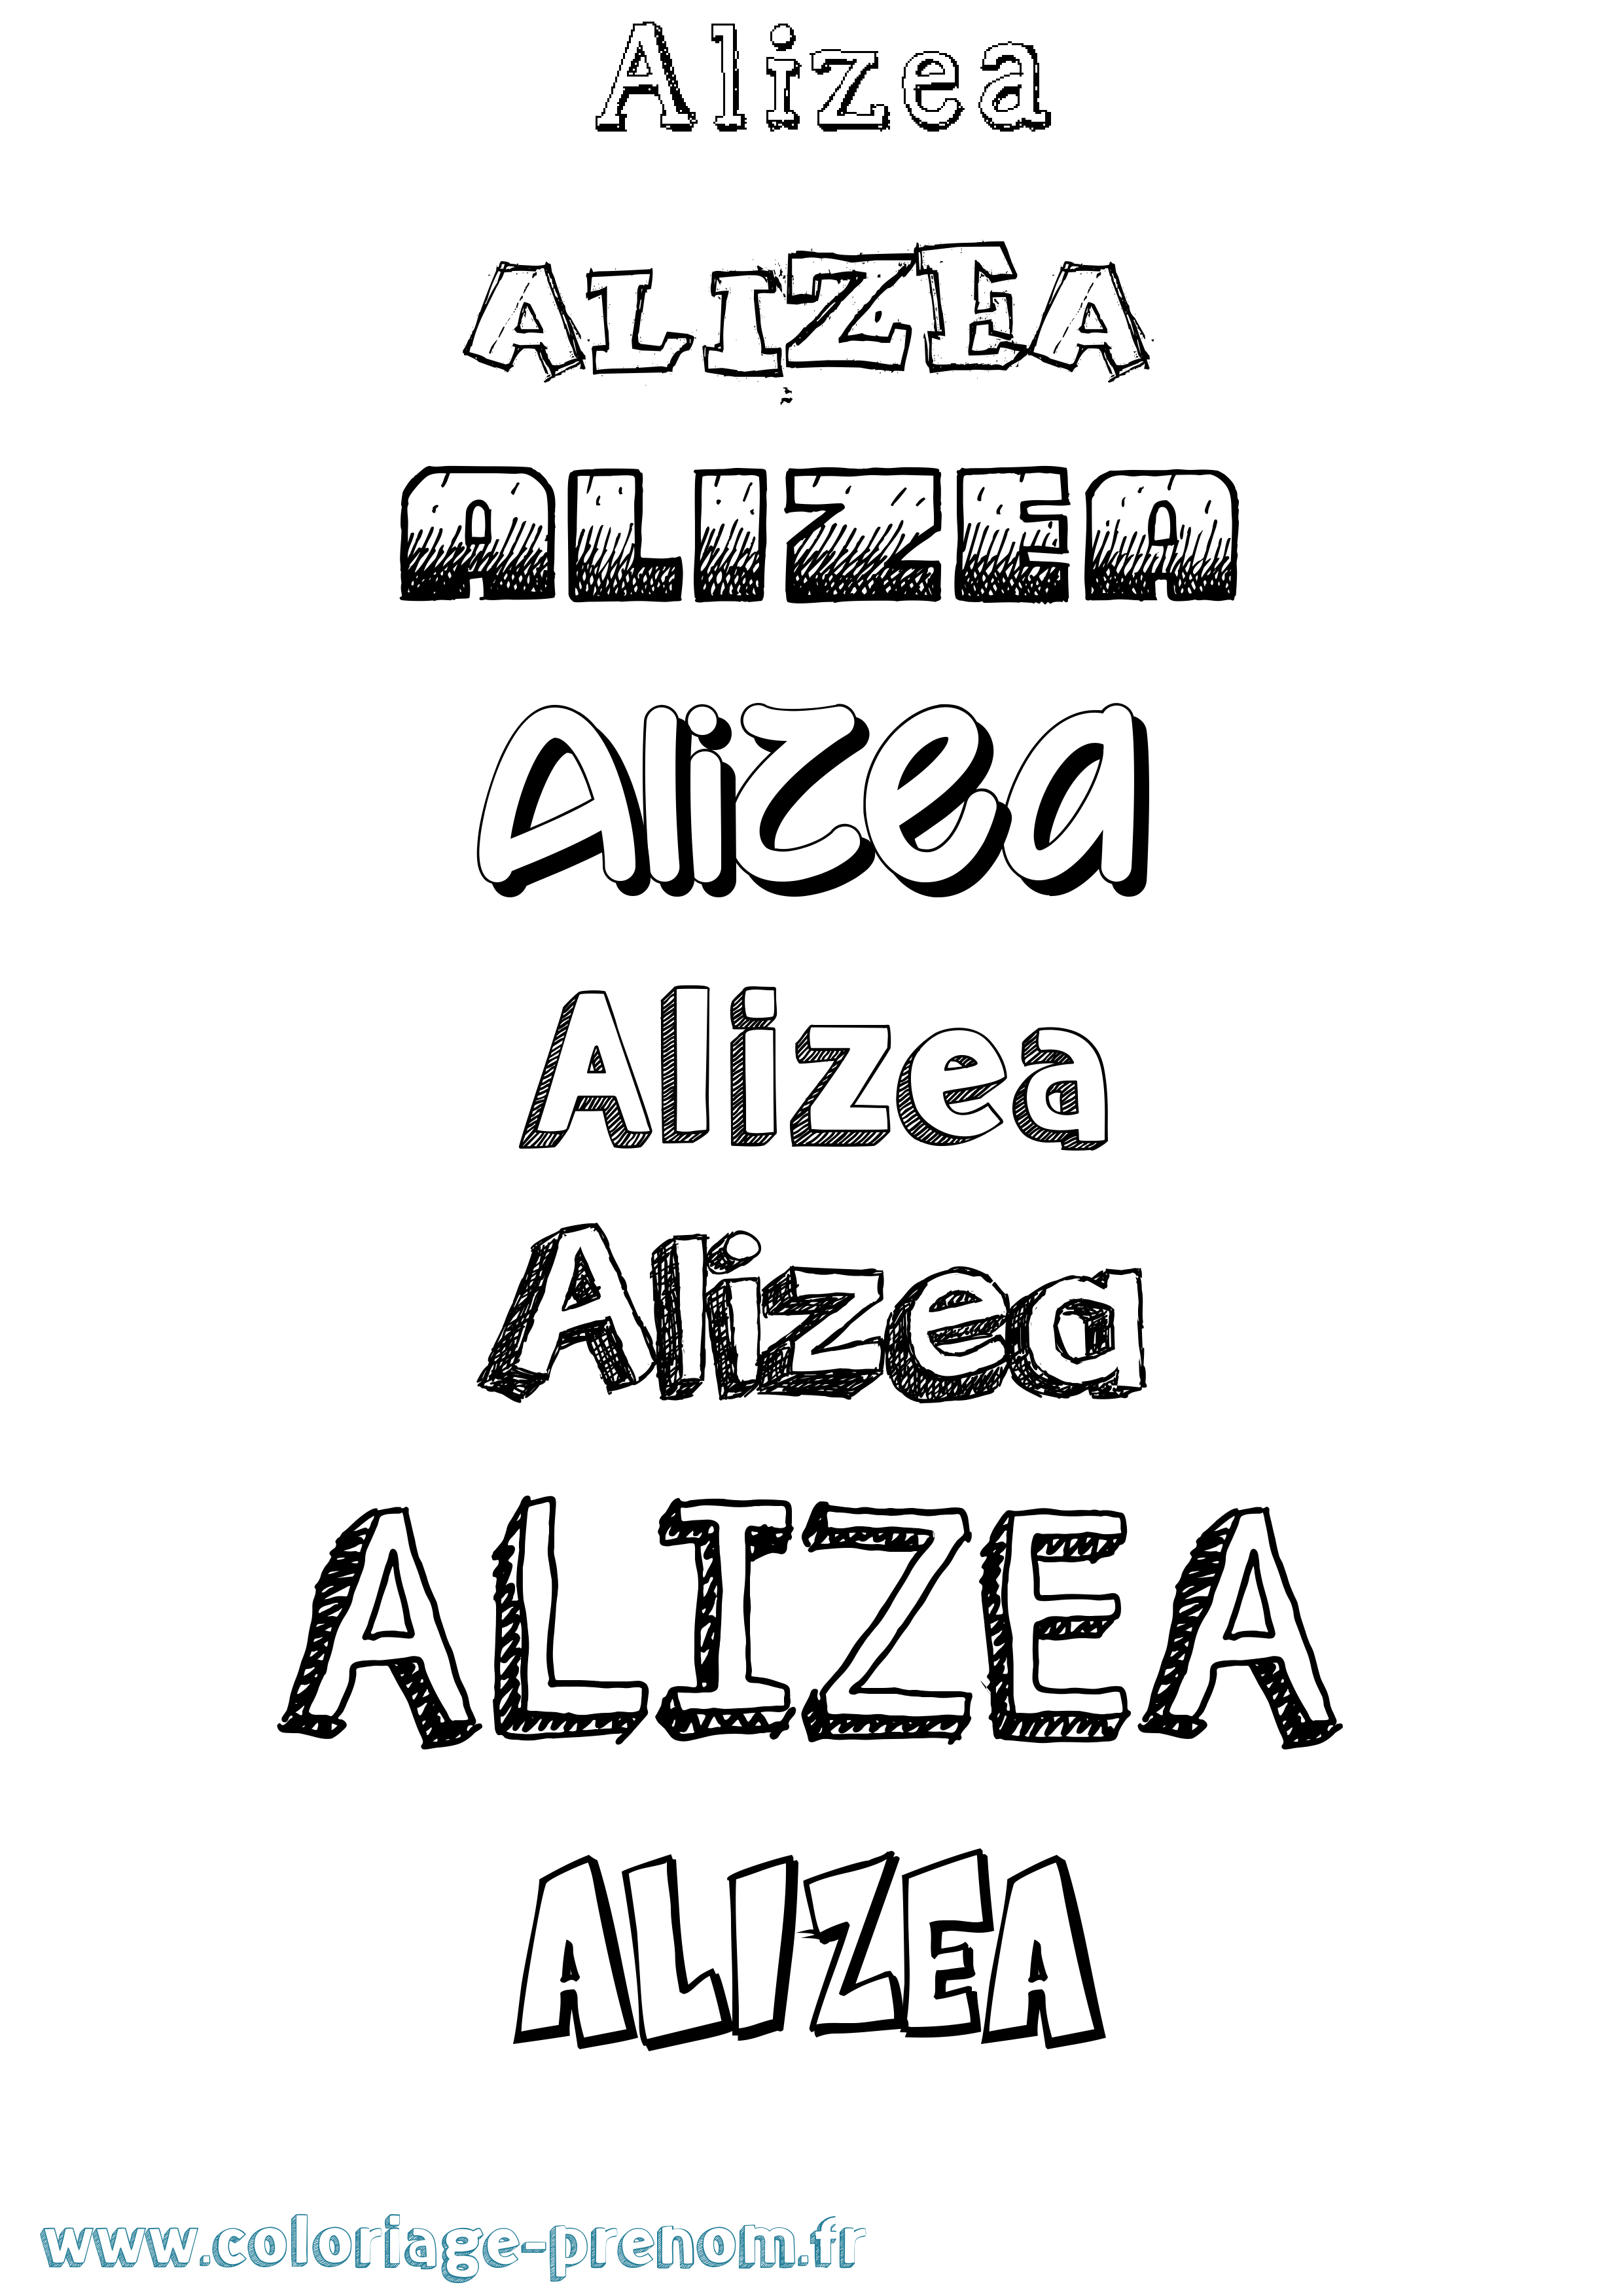 Coloriage prénom Alizea Dessiné